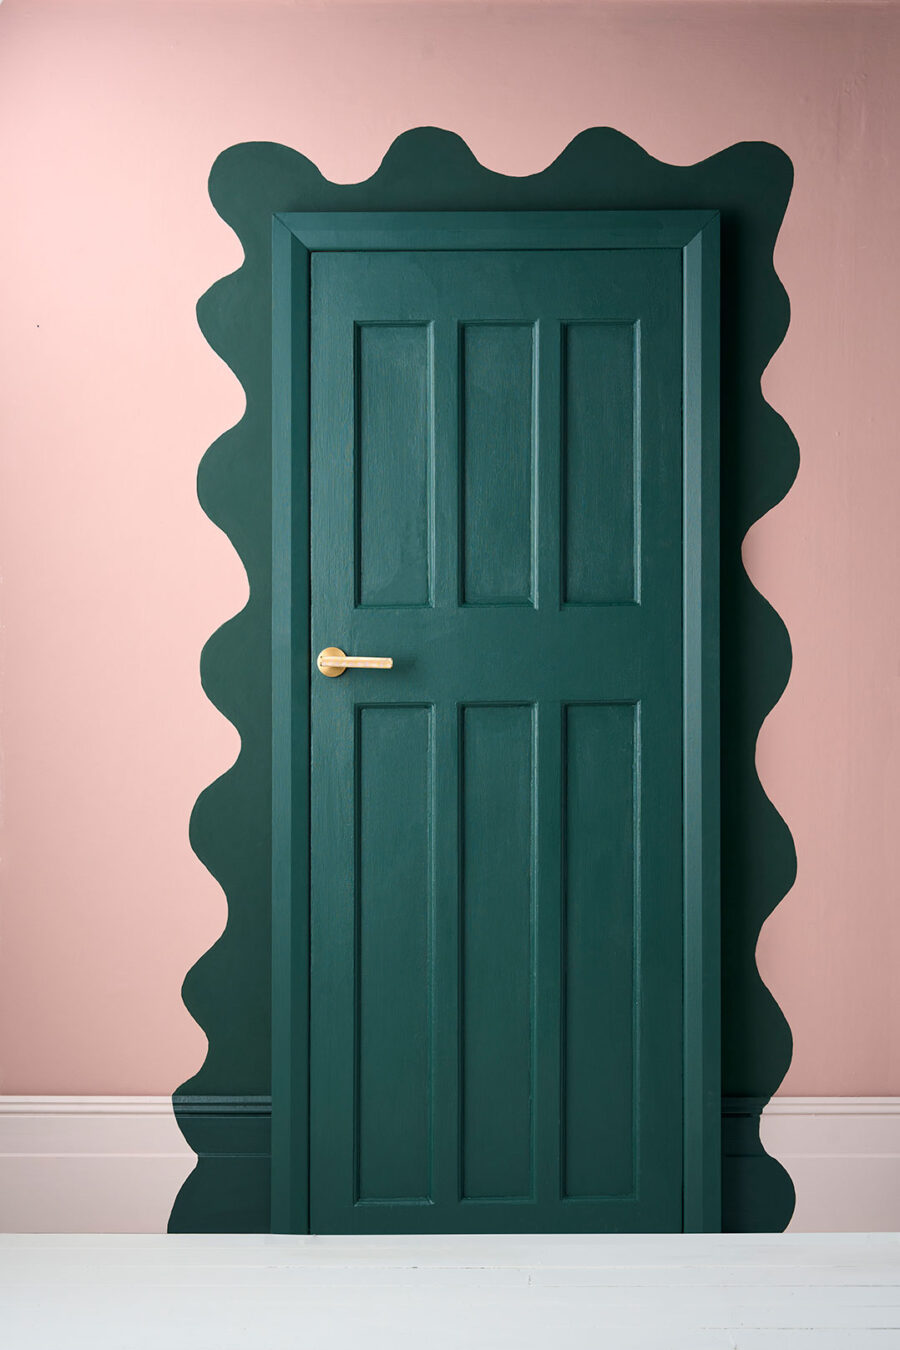 Chalk Paint - The Green Door